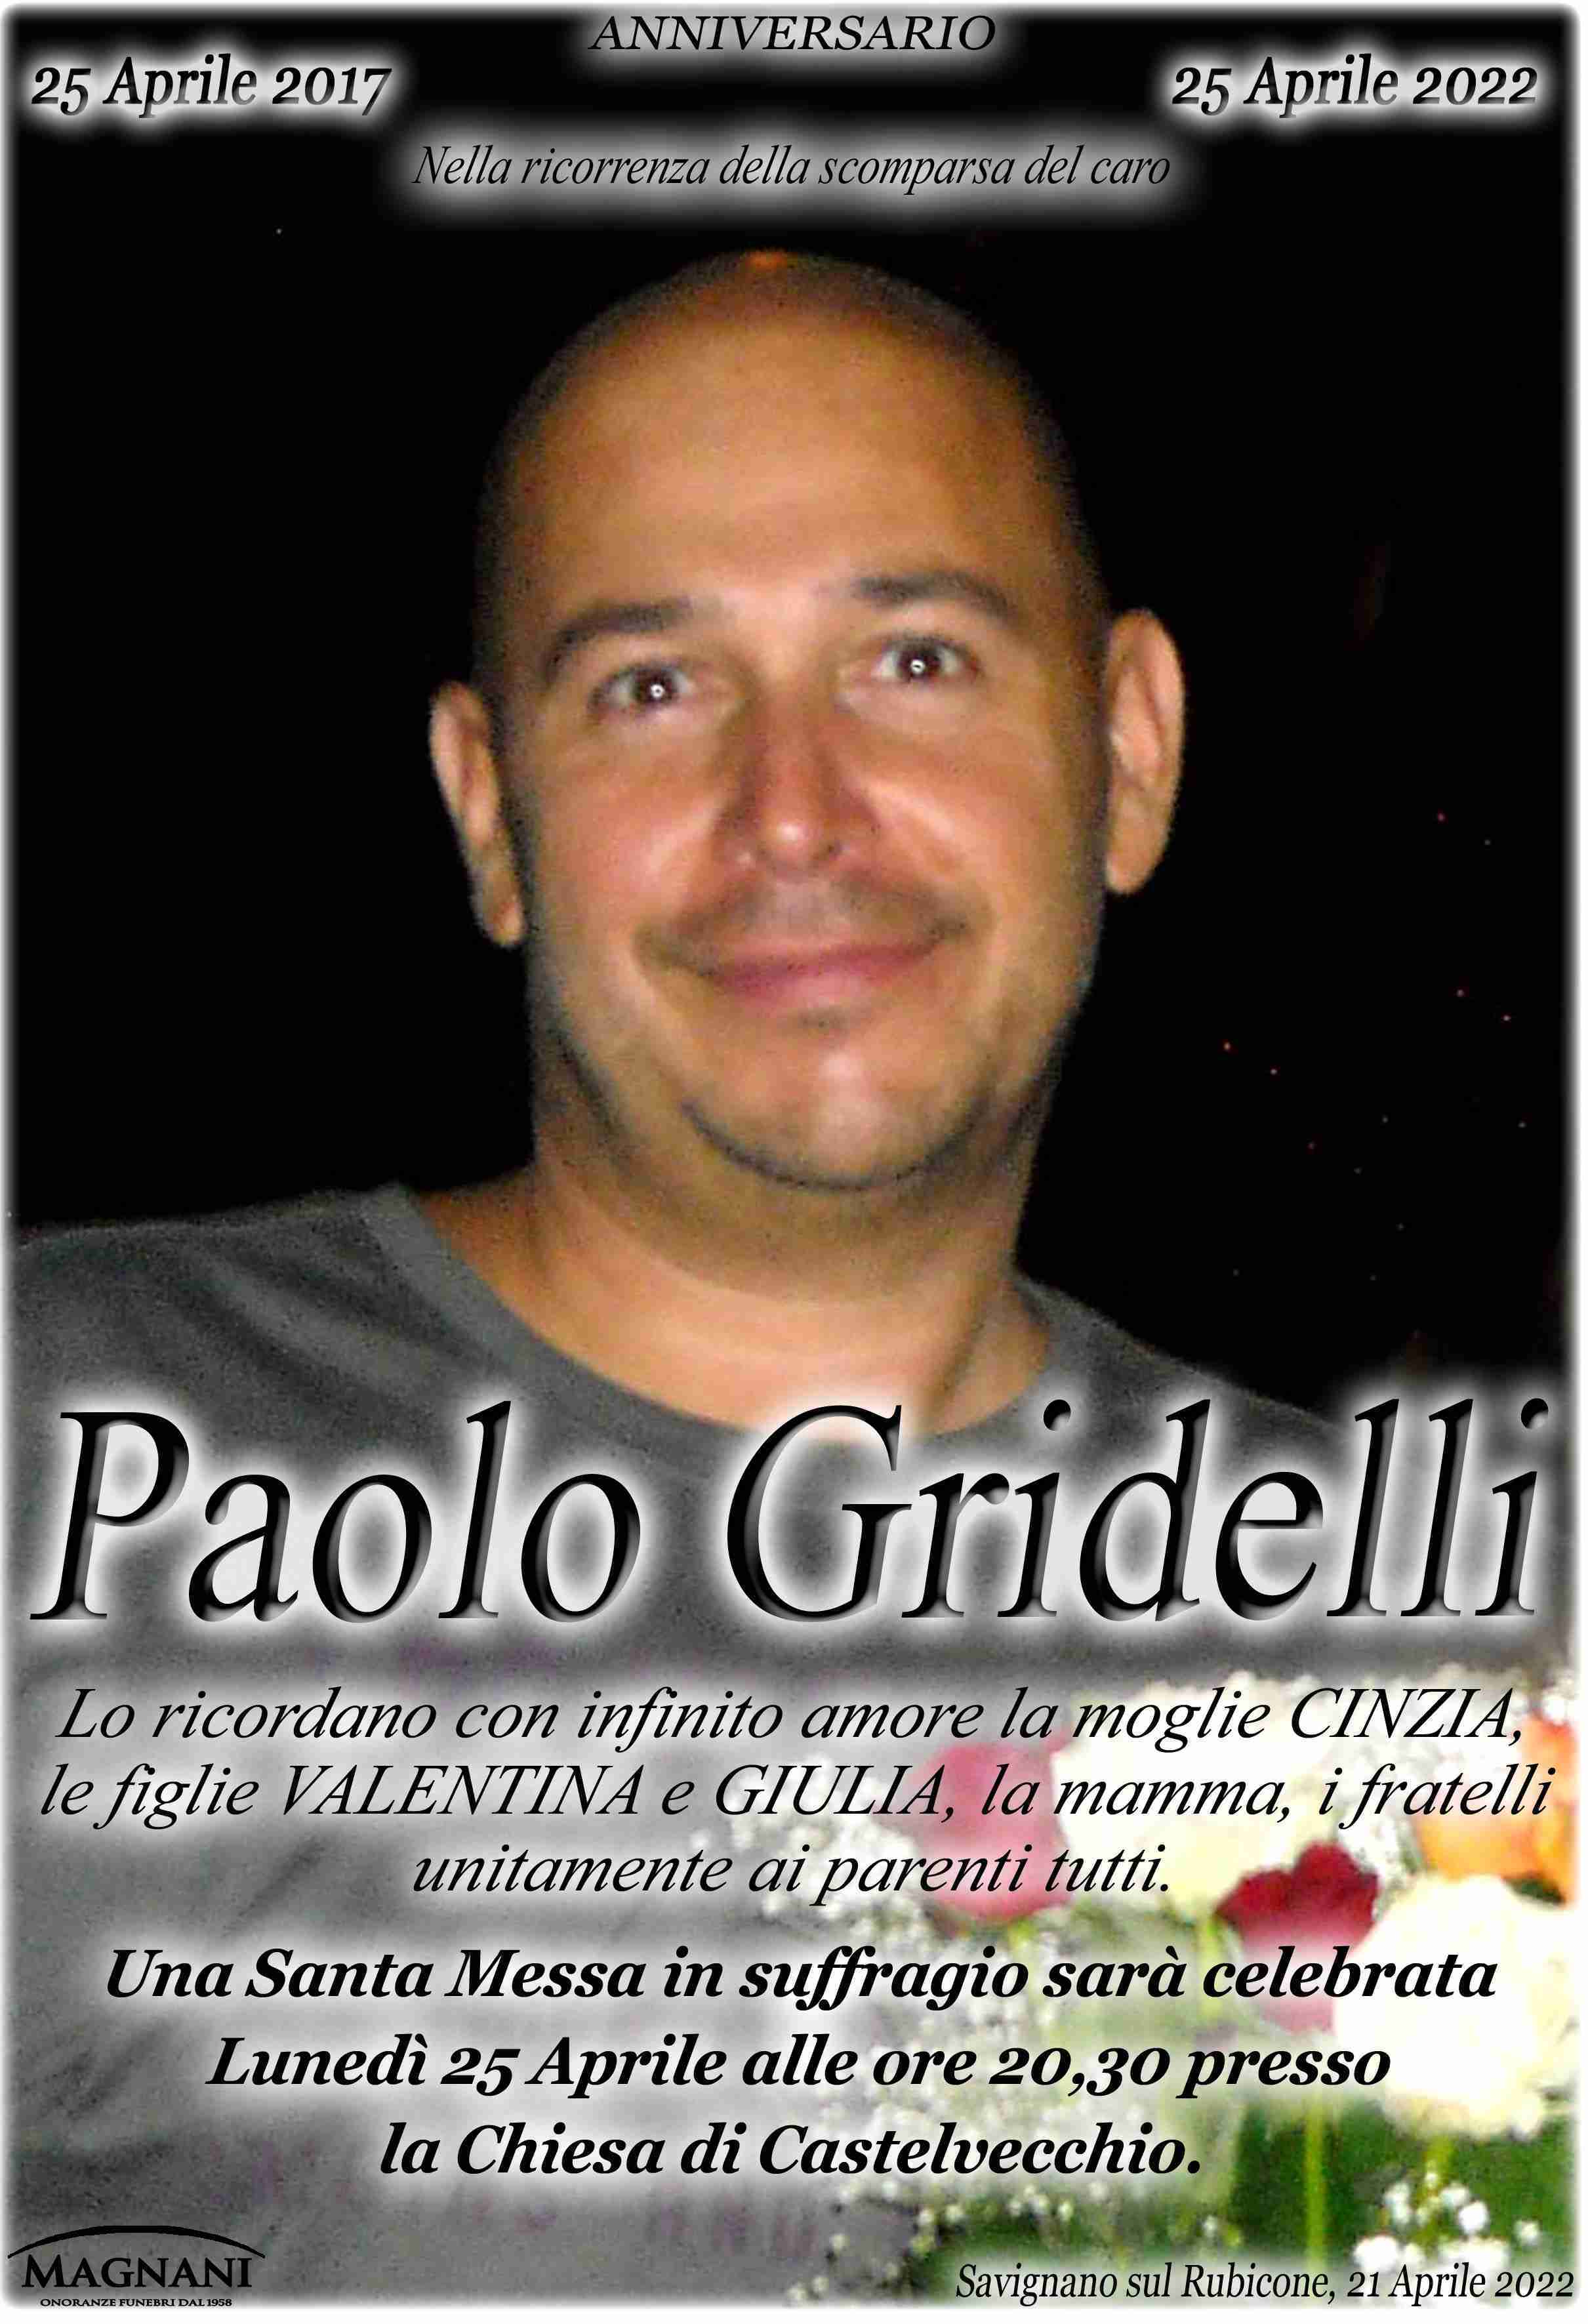 Paolo Gridelli